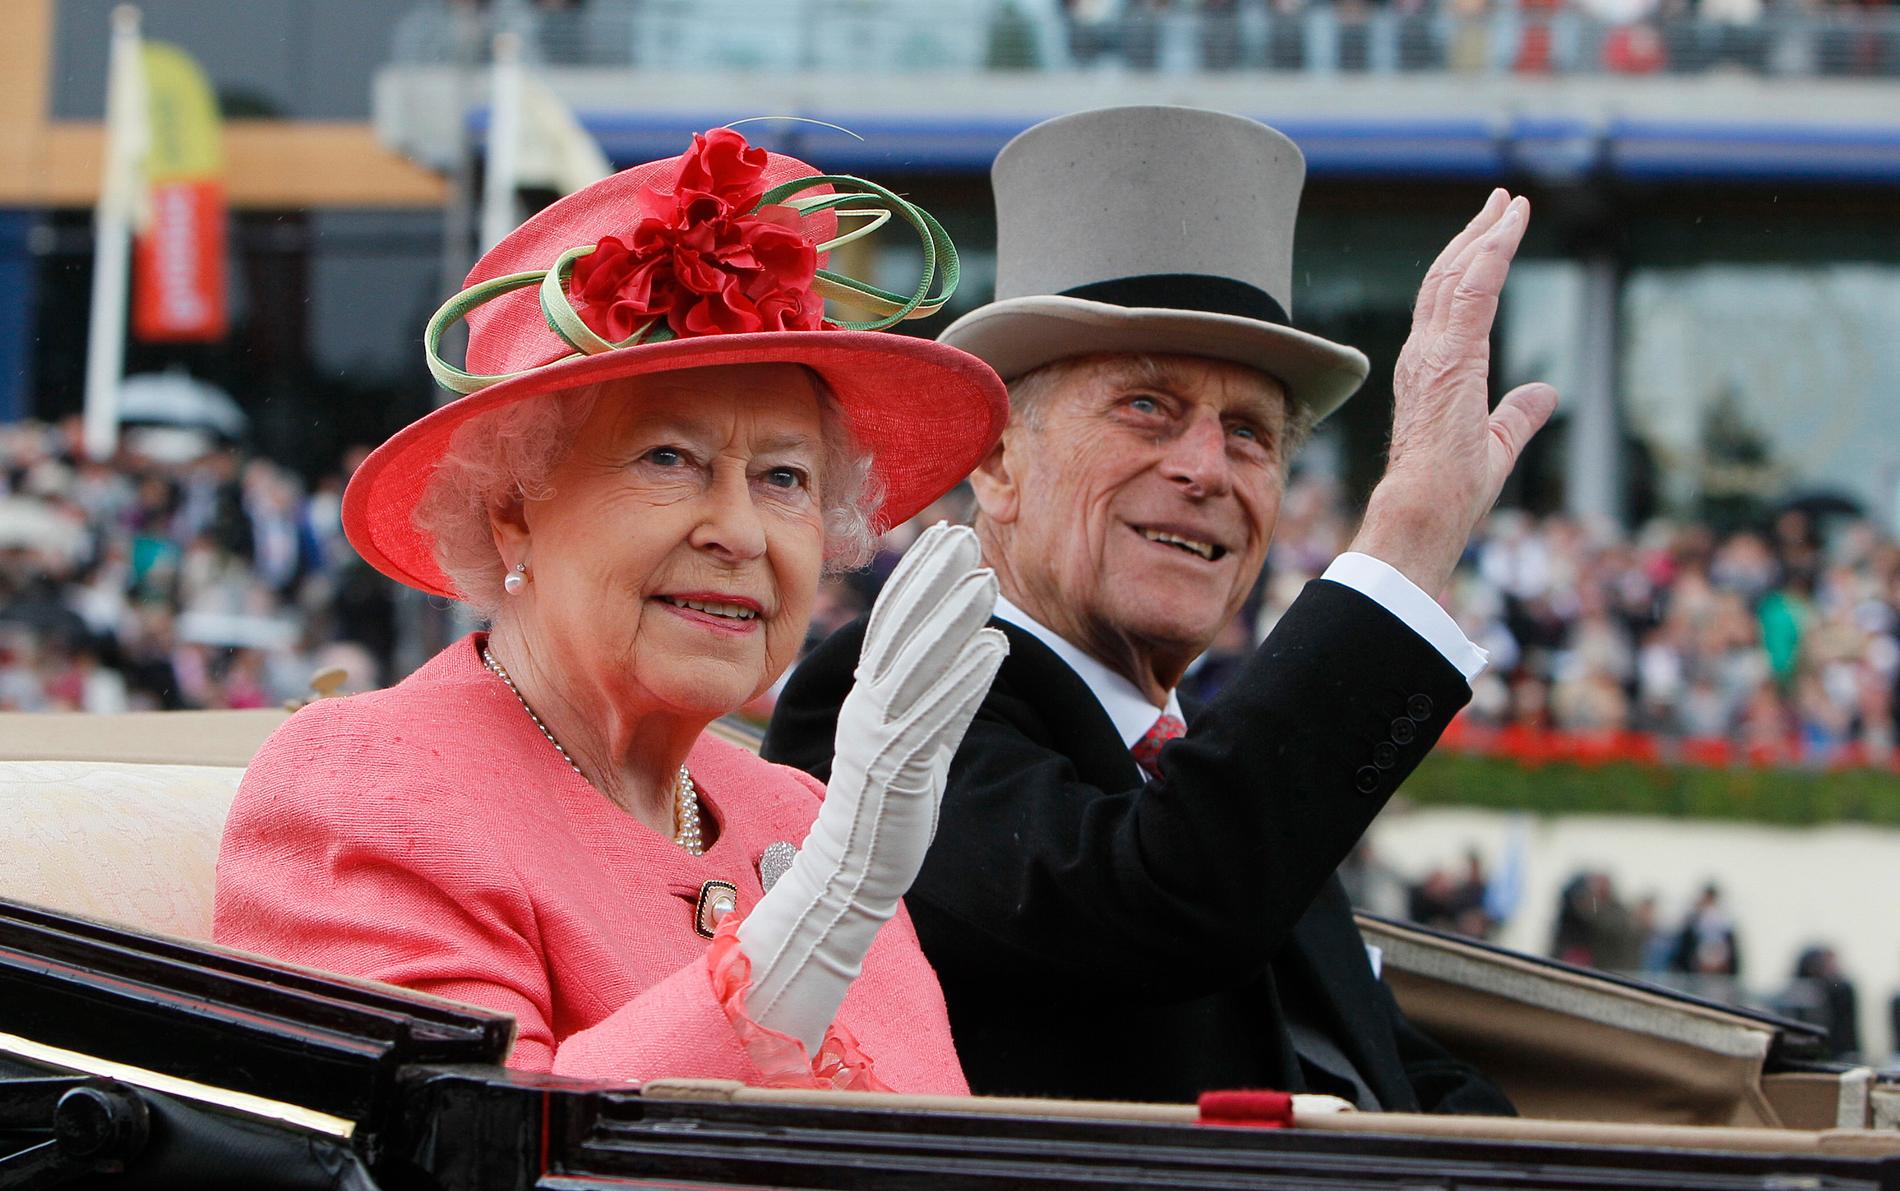 Drottning Elizabeth II och prins anländer till Ladies Day, på Royal Ascot horse race vid Ascot, England. Arkiv 2011